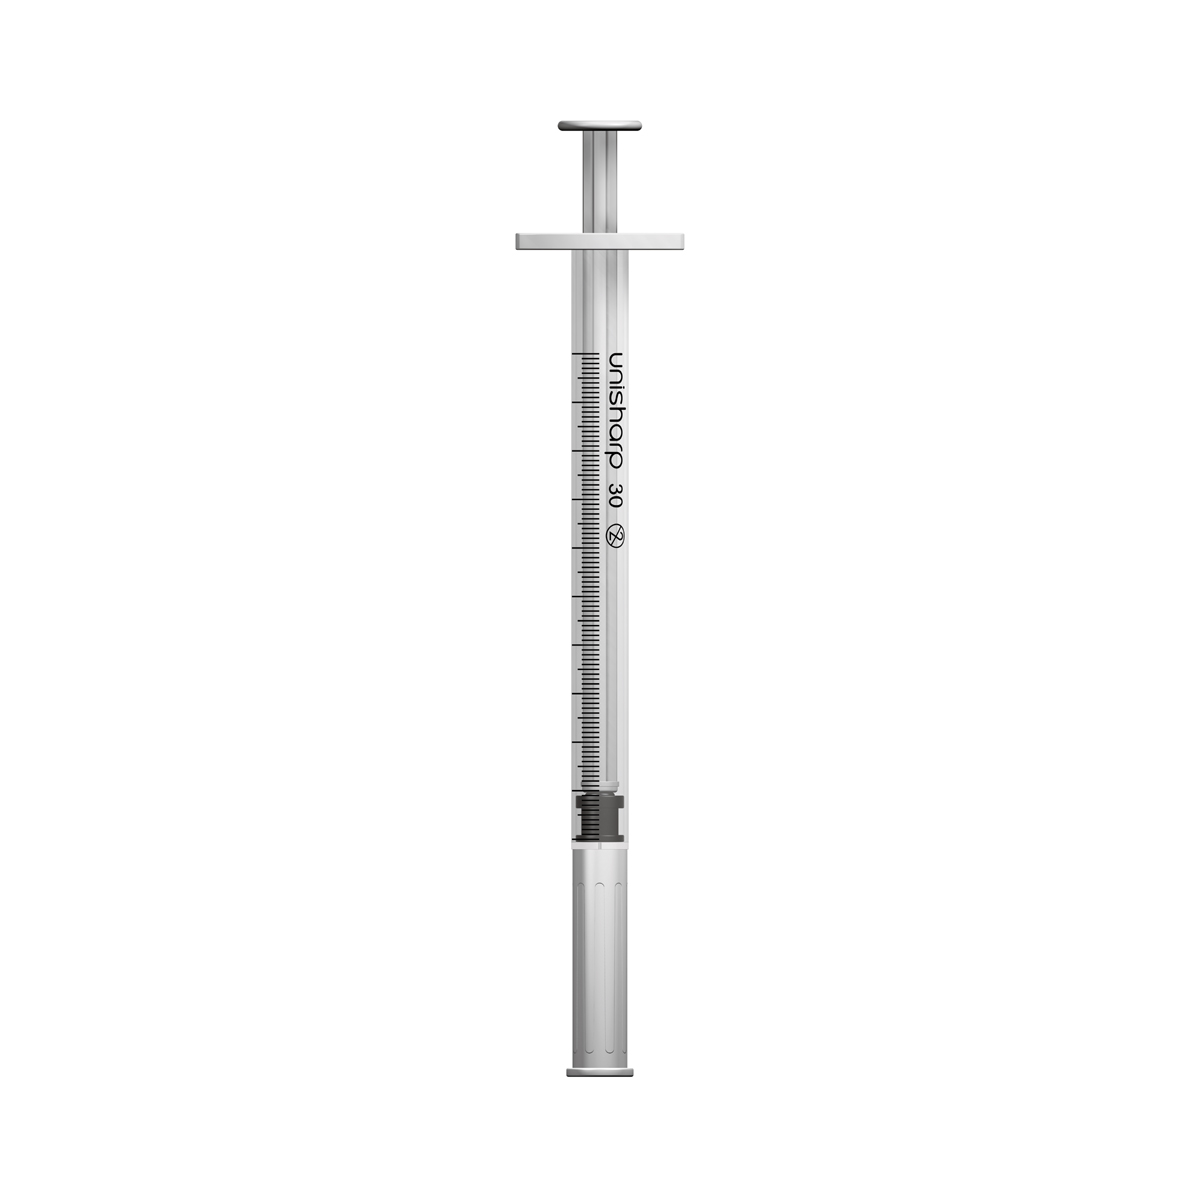 Unisharp 1ml 30G fixed needle syringe: white